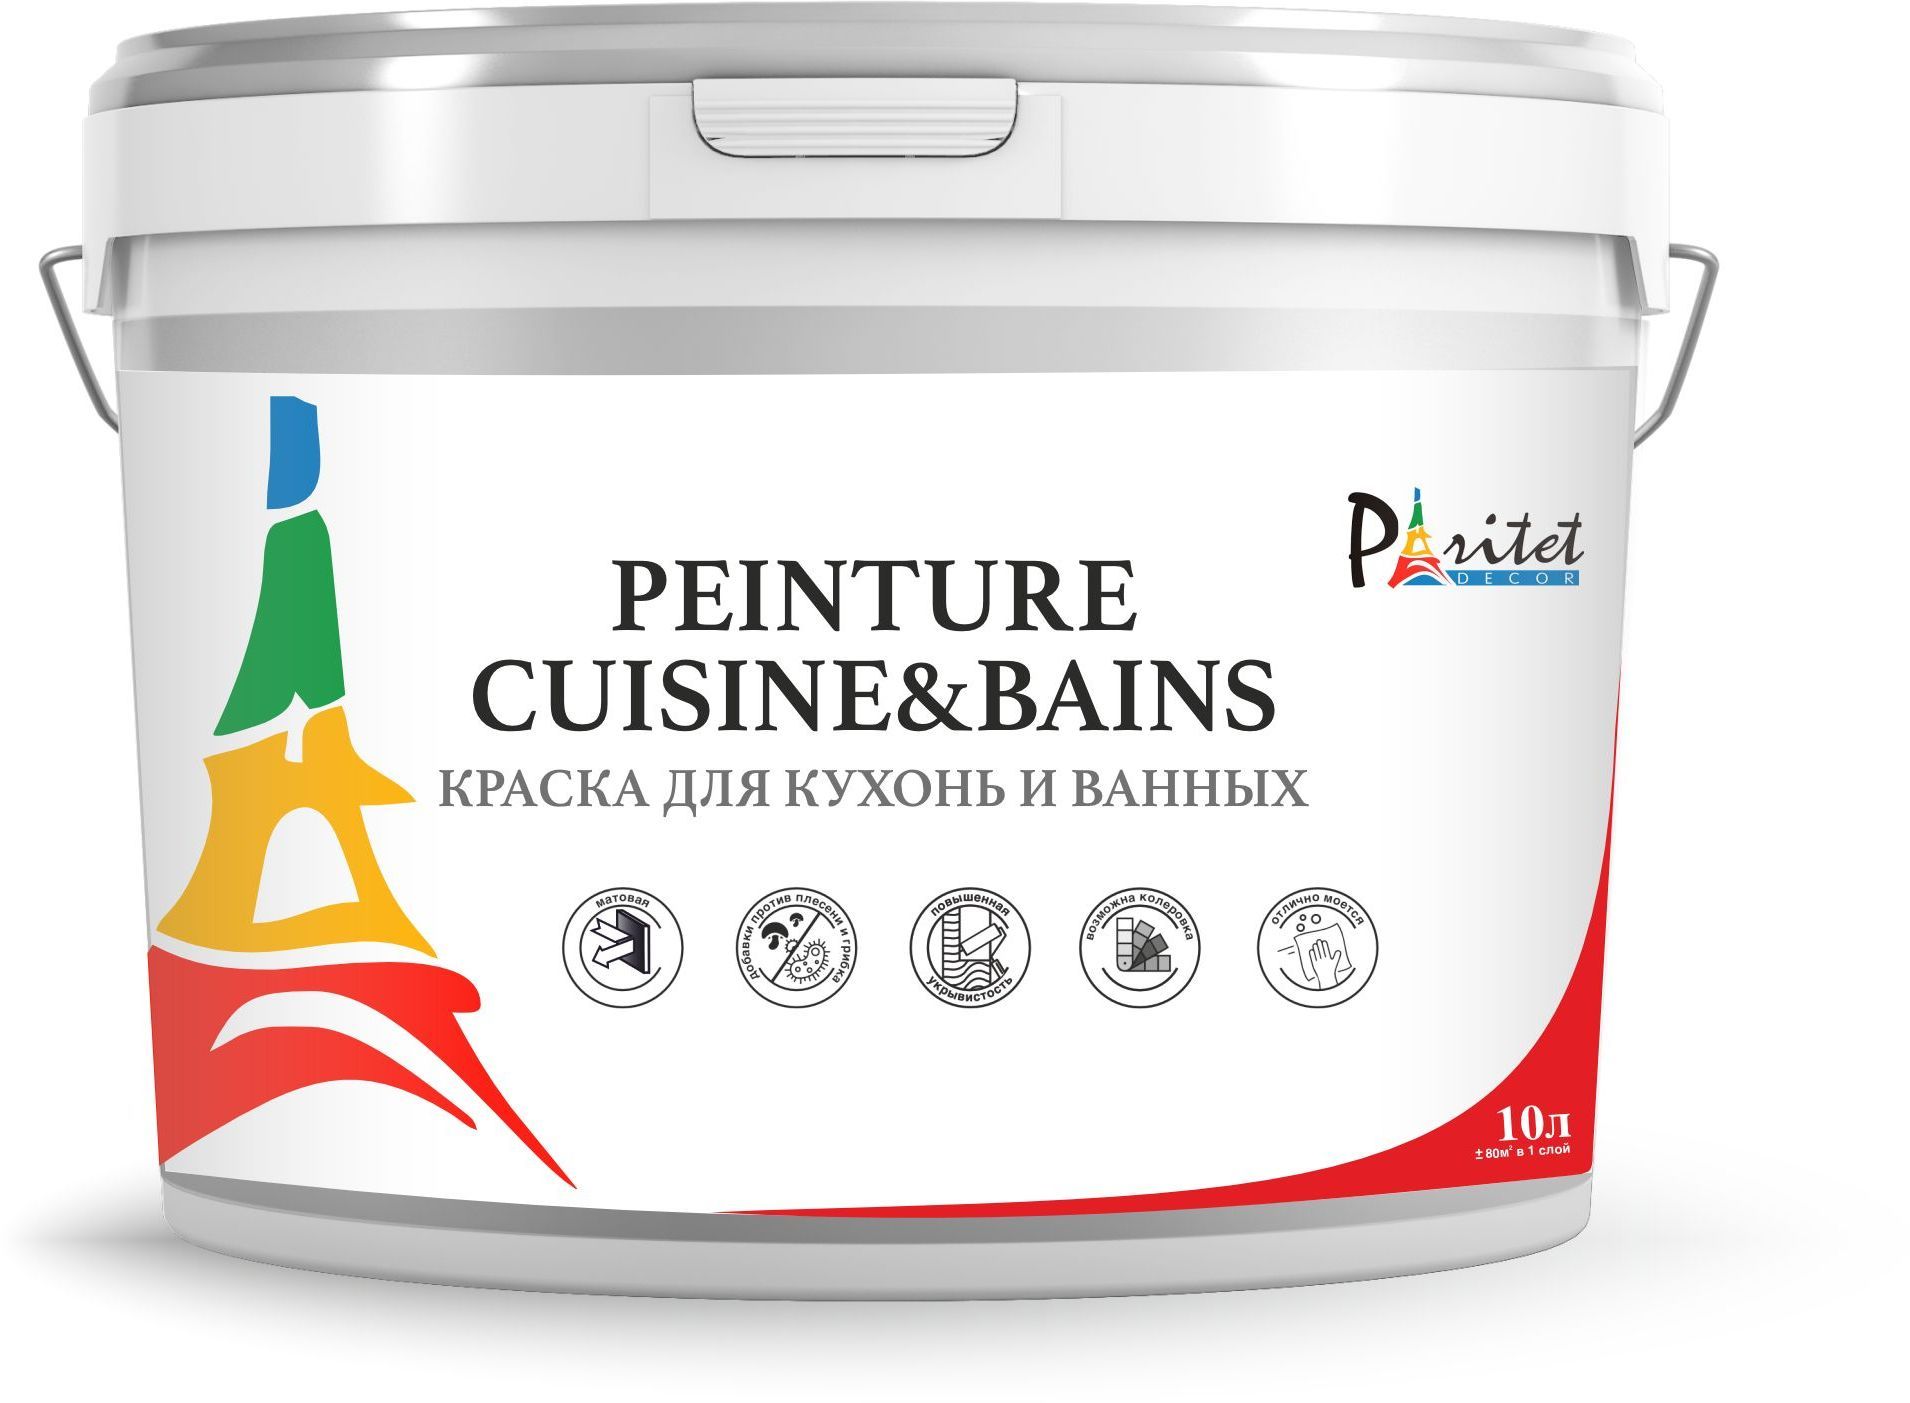 Краска интерьерная для кухонь и ванных Paritet Peinture Cuisine&Bains, 10л